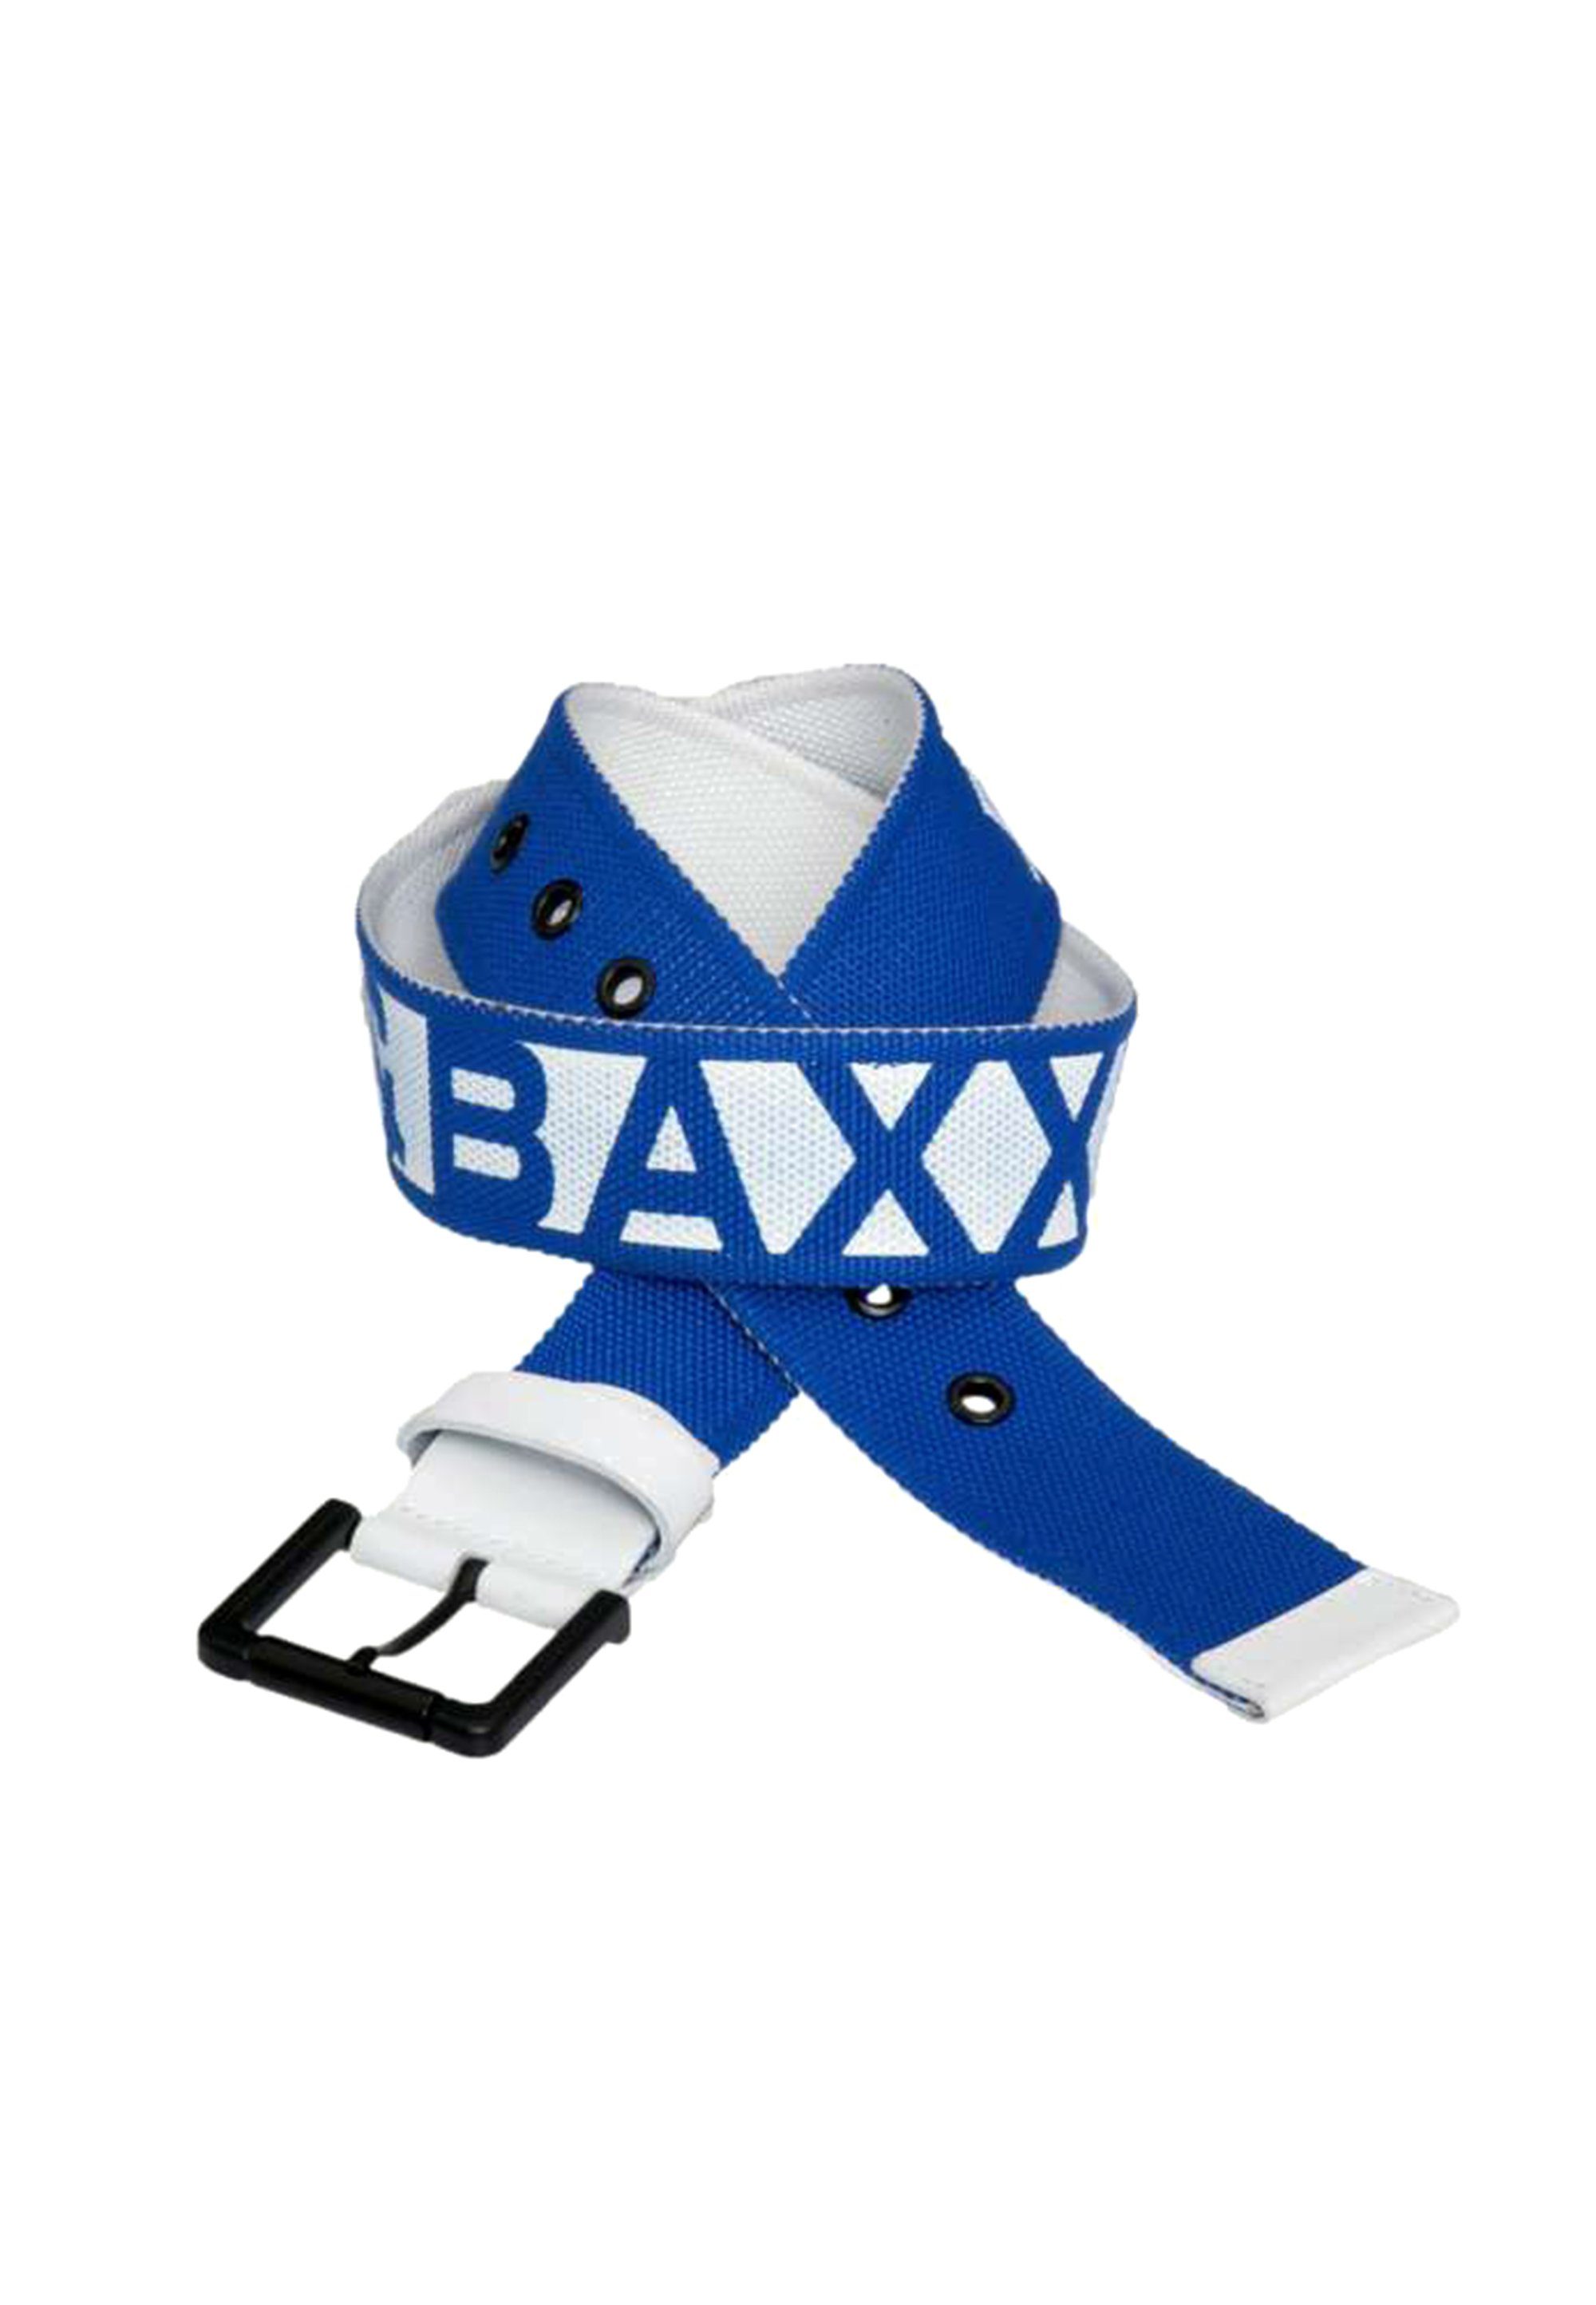 Cipo & Baxx coolem Stoffgürtel blau-weiß mit Markendesign